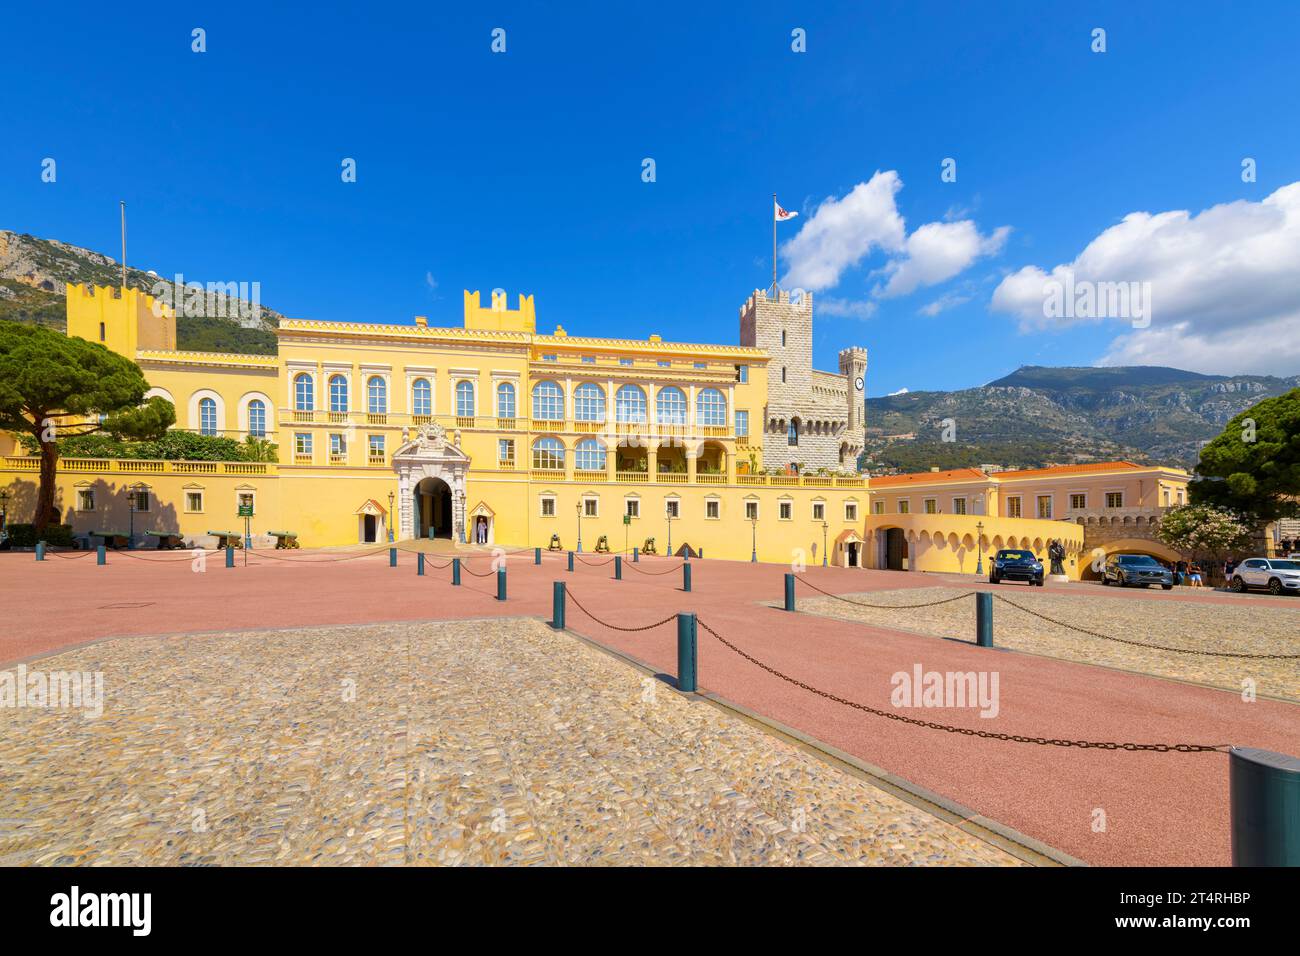 Le Palais princier historique de Monaco sur la place du Palais sur le Rocher à Monte Carlo, Monaco. Banque D'Images